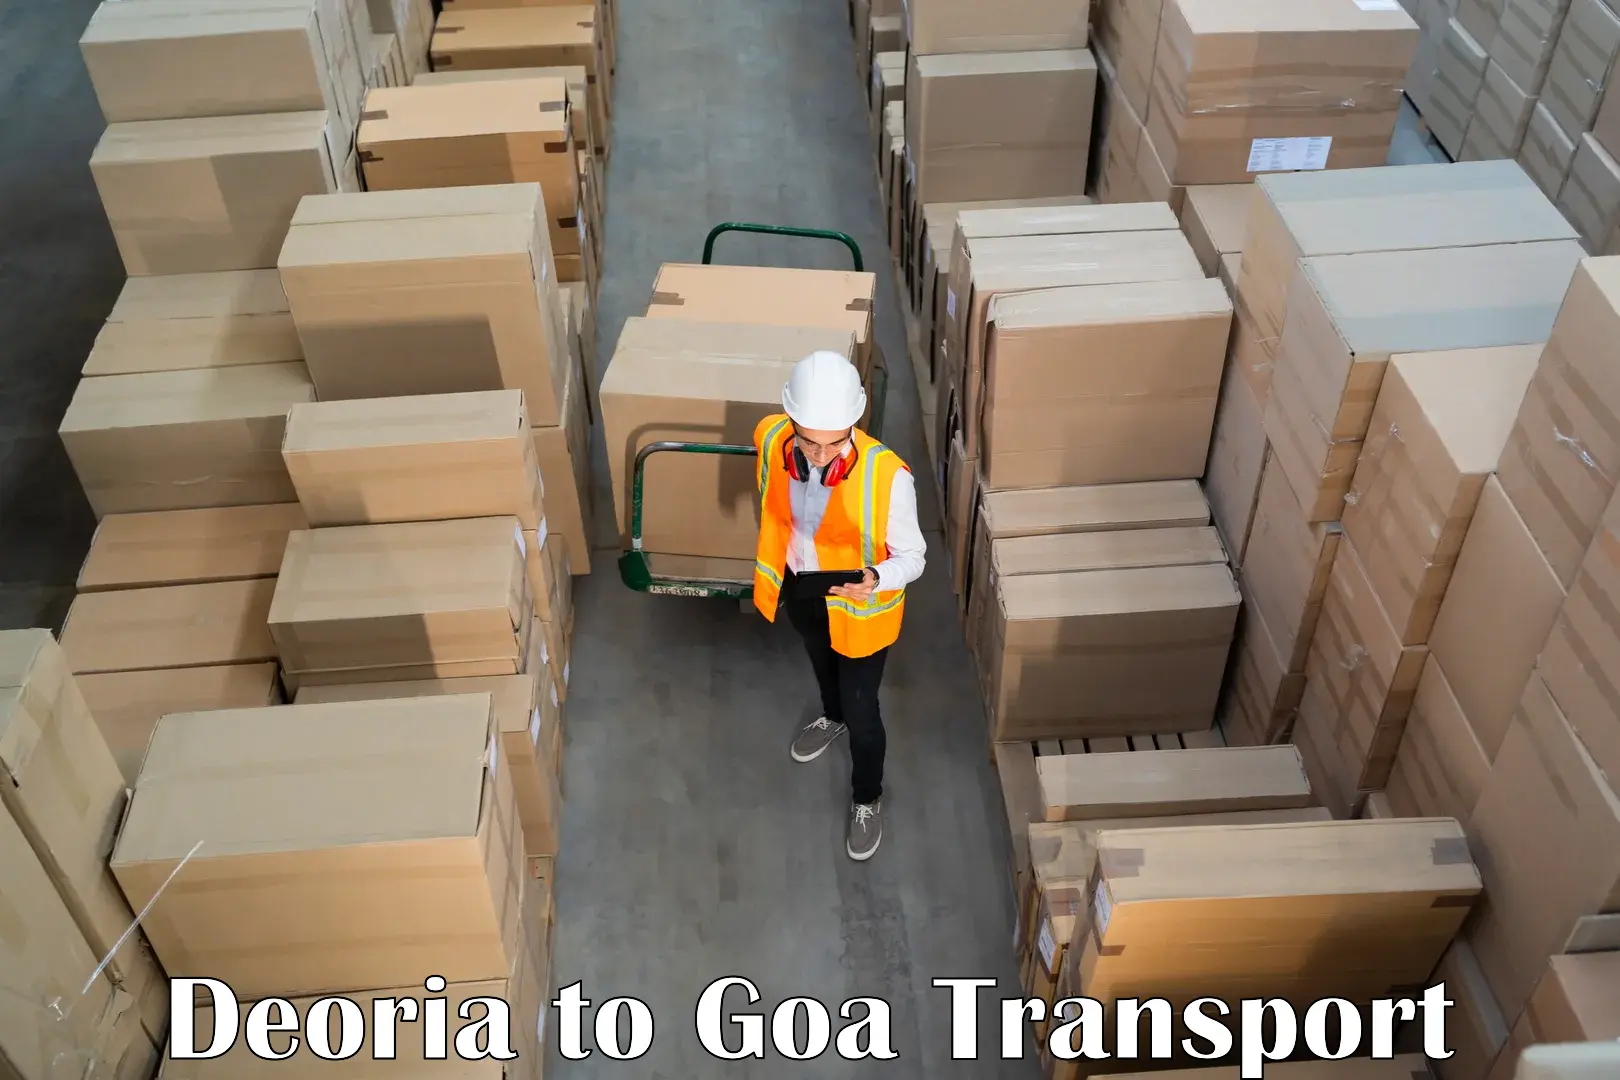 Furniture transport service Deoria to Bicholim